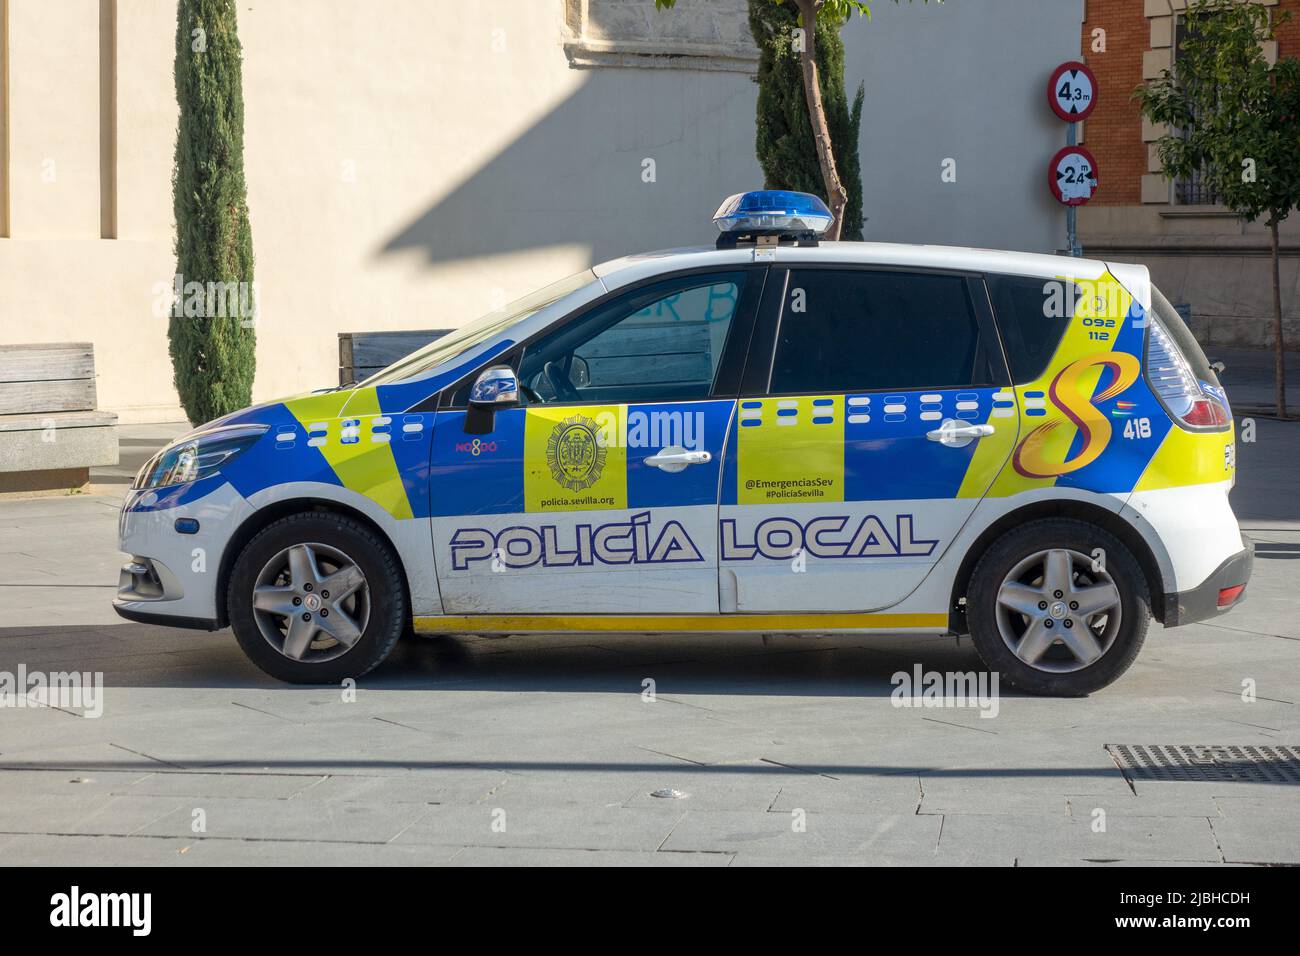 Local Séville Espagne véhicule de police Renault stationné dans le centre ville de Séville Espagne, police municipale locale Policia Banque D'Images